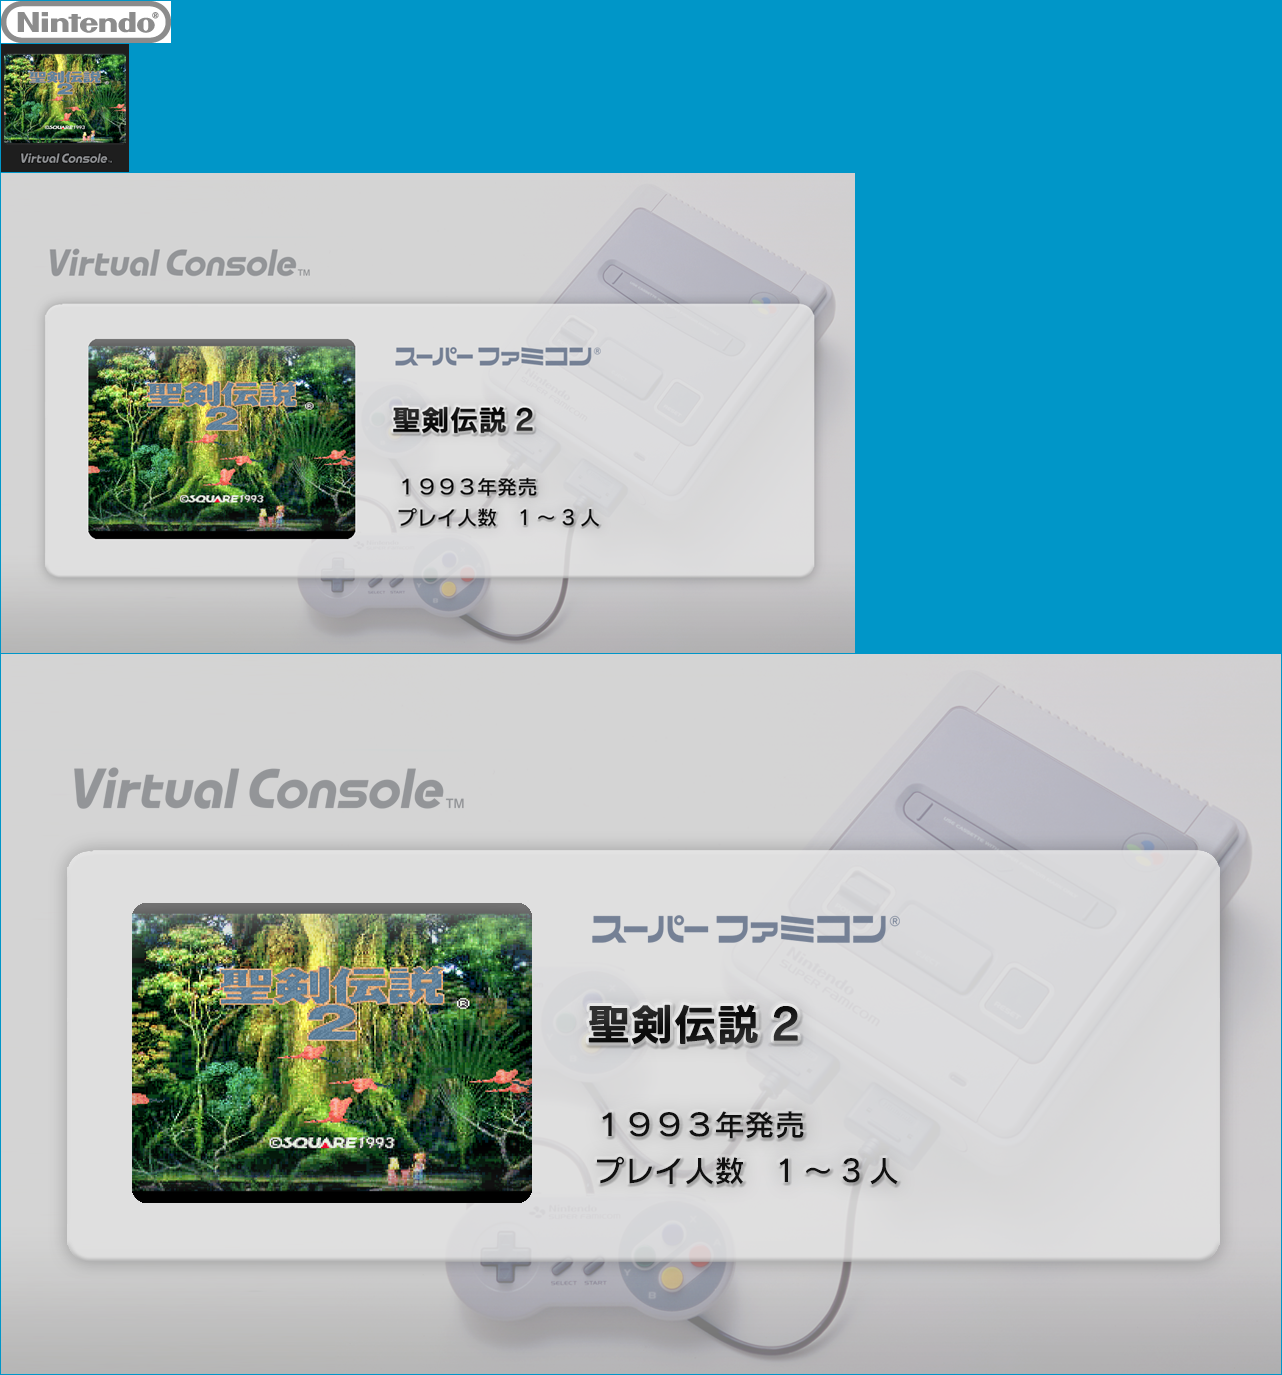 Virtual Console - Seiken Densetsu 2